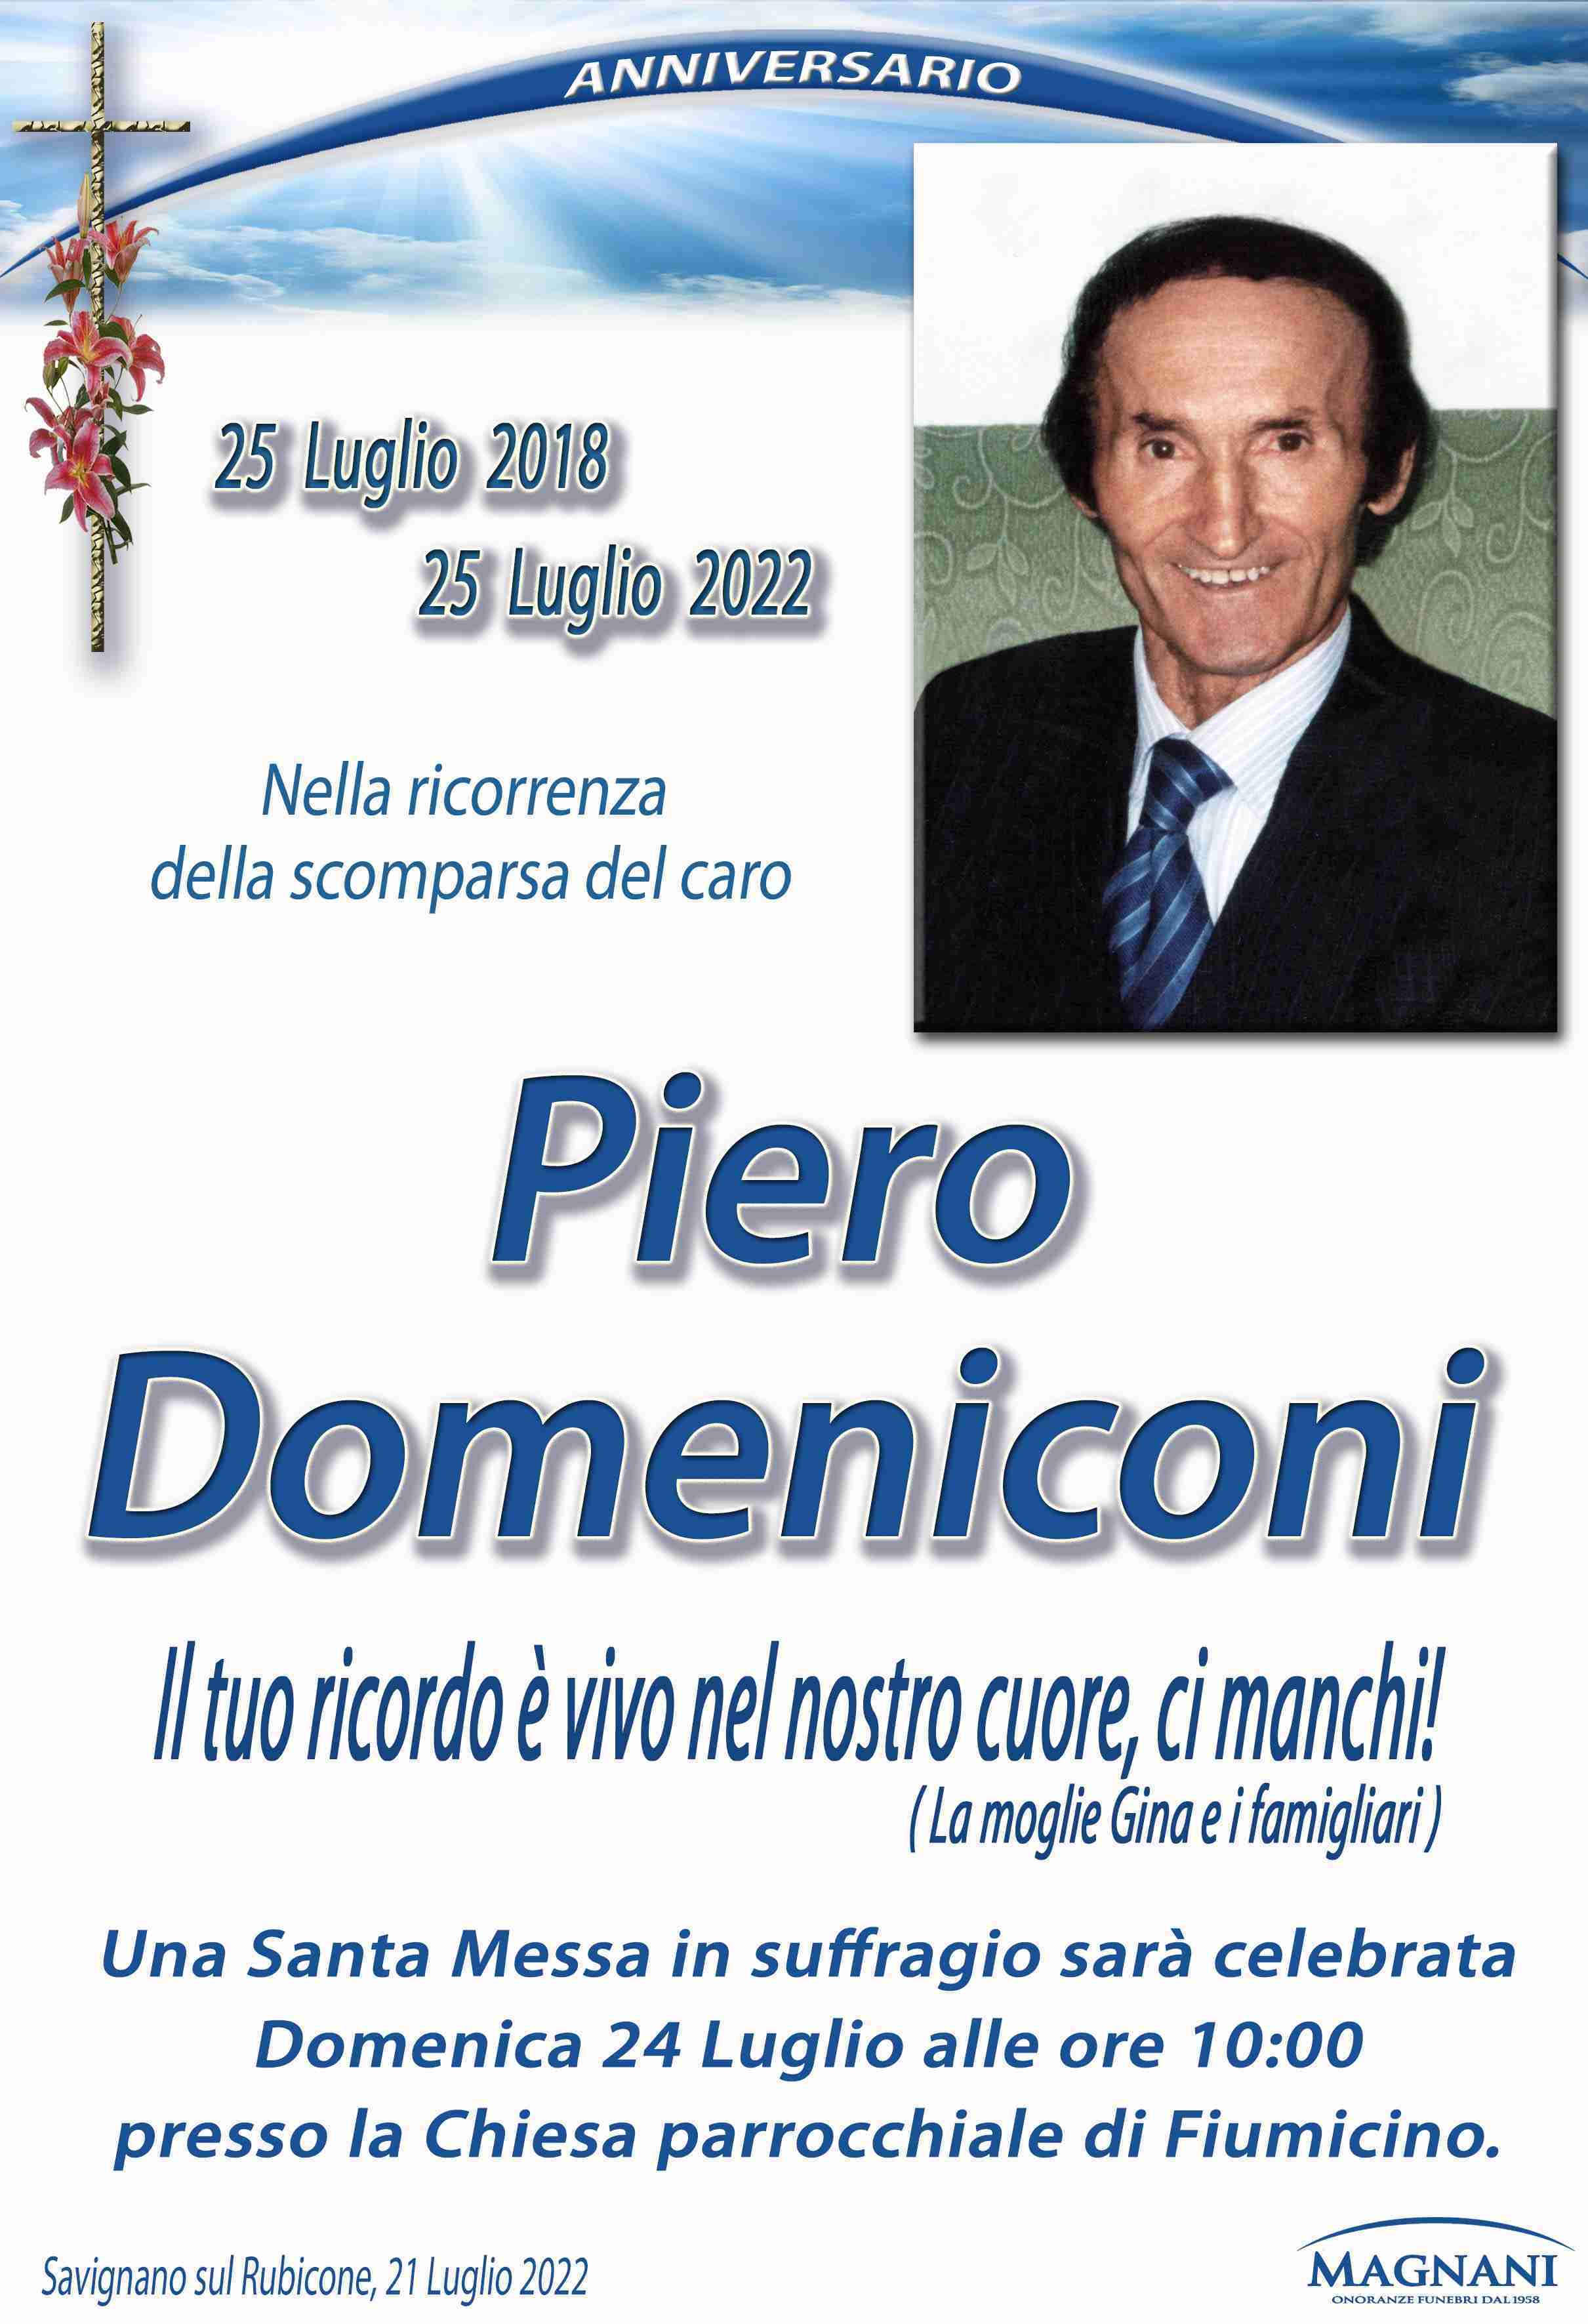 Piero Domeniconi